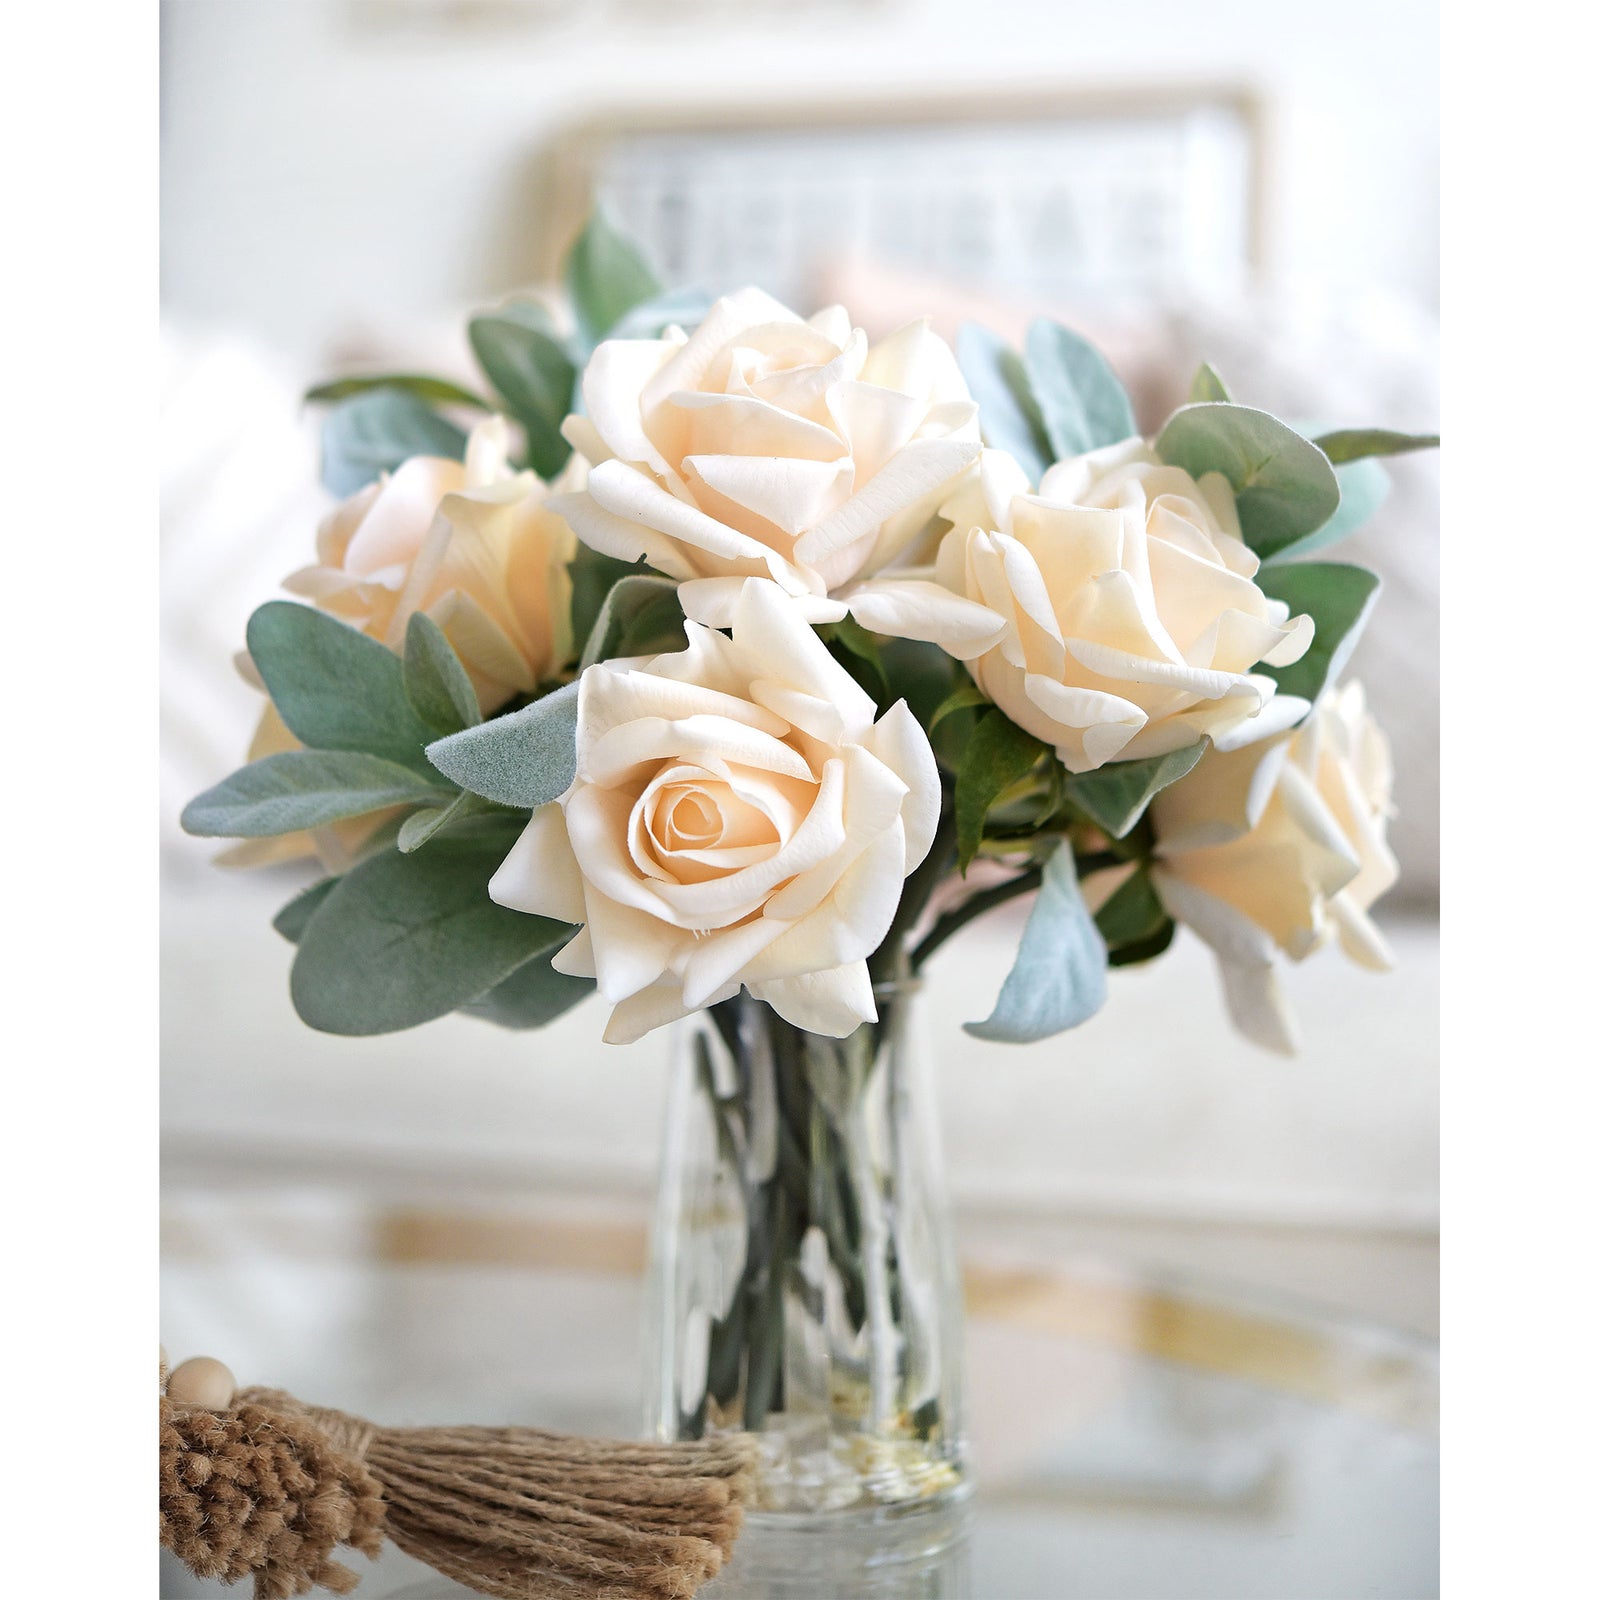 FiveSeasonStuff Soft Peach Real Touch Garden Rose Artificial Flowers Wedding, Bridal, Home Décor 5 Stems 9.8"